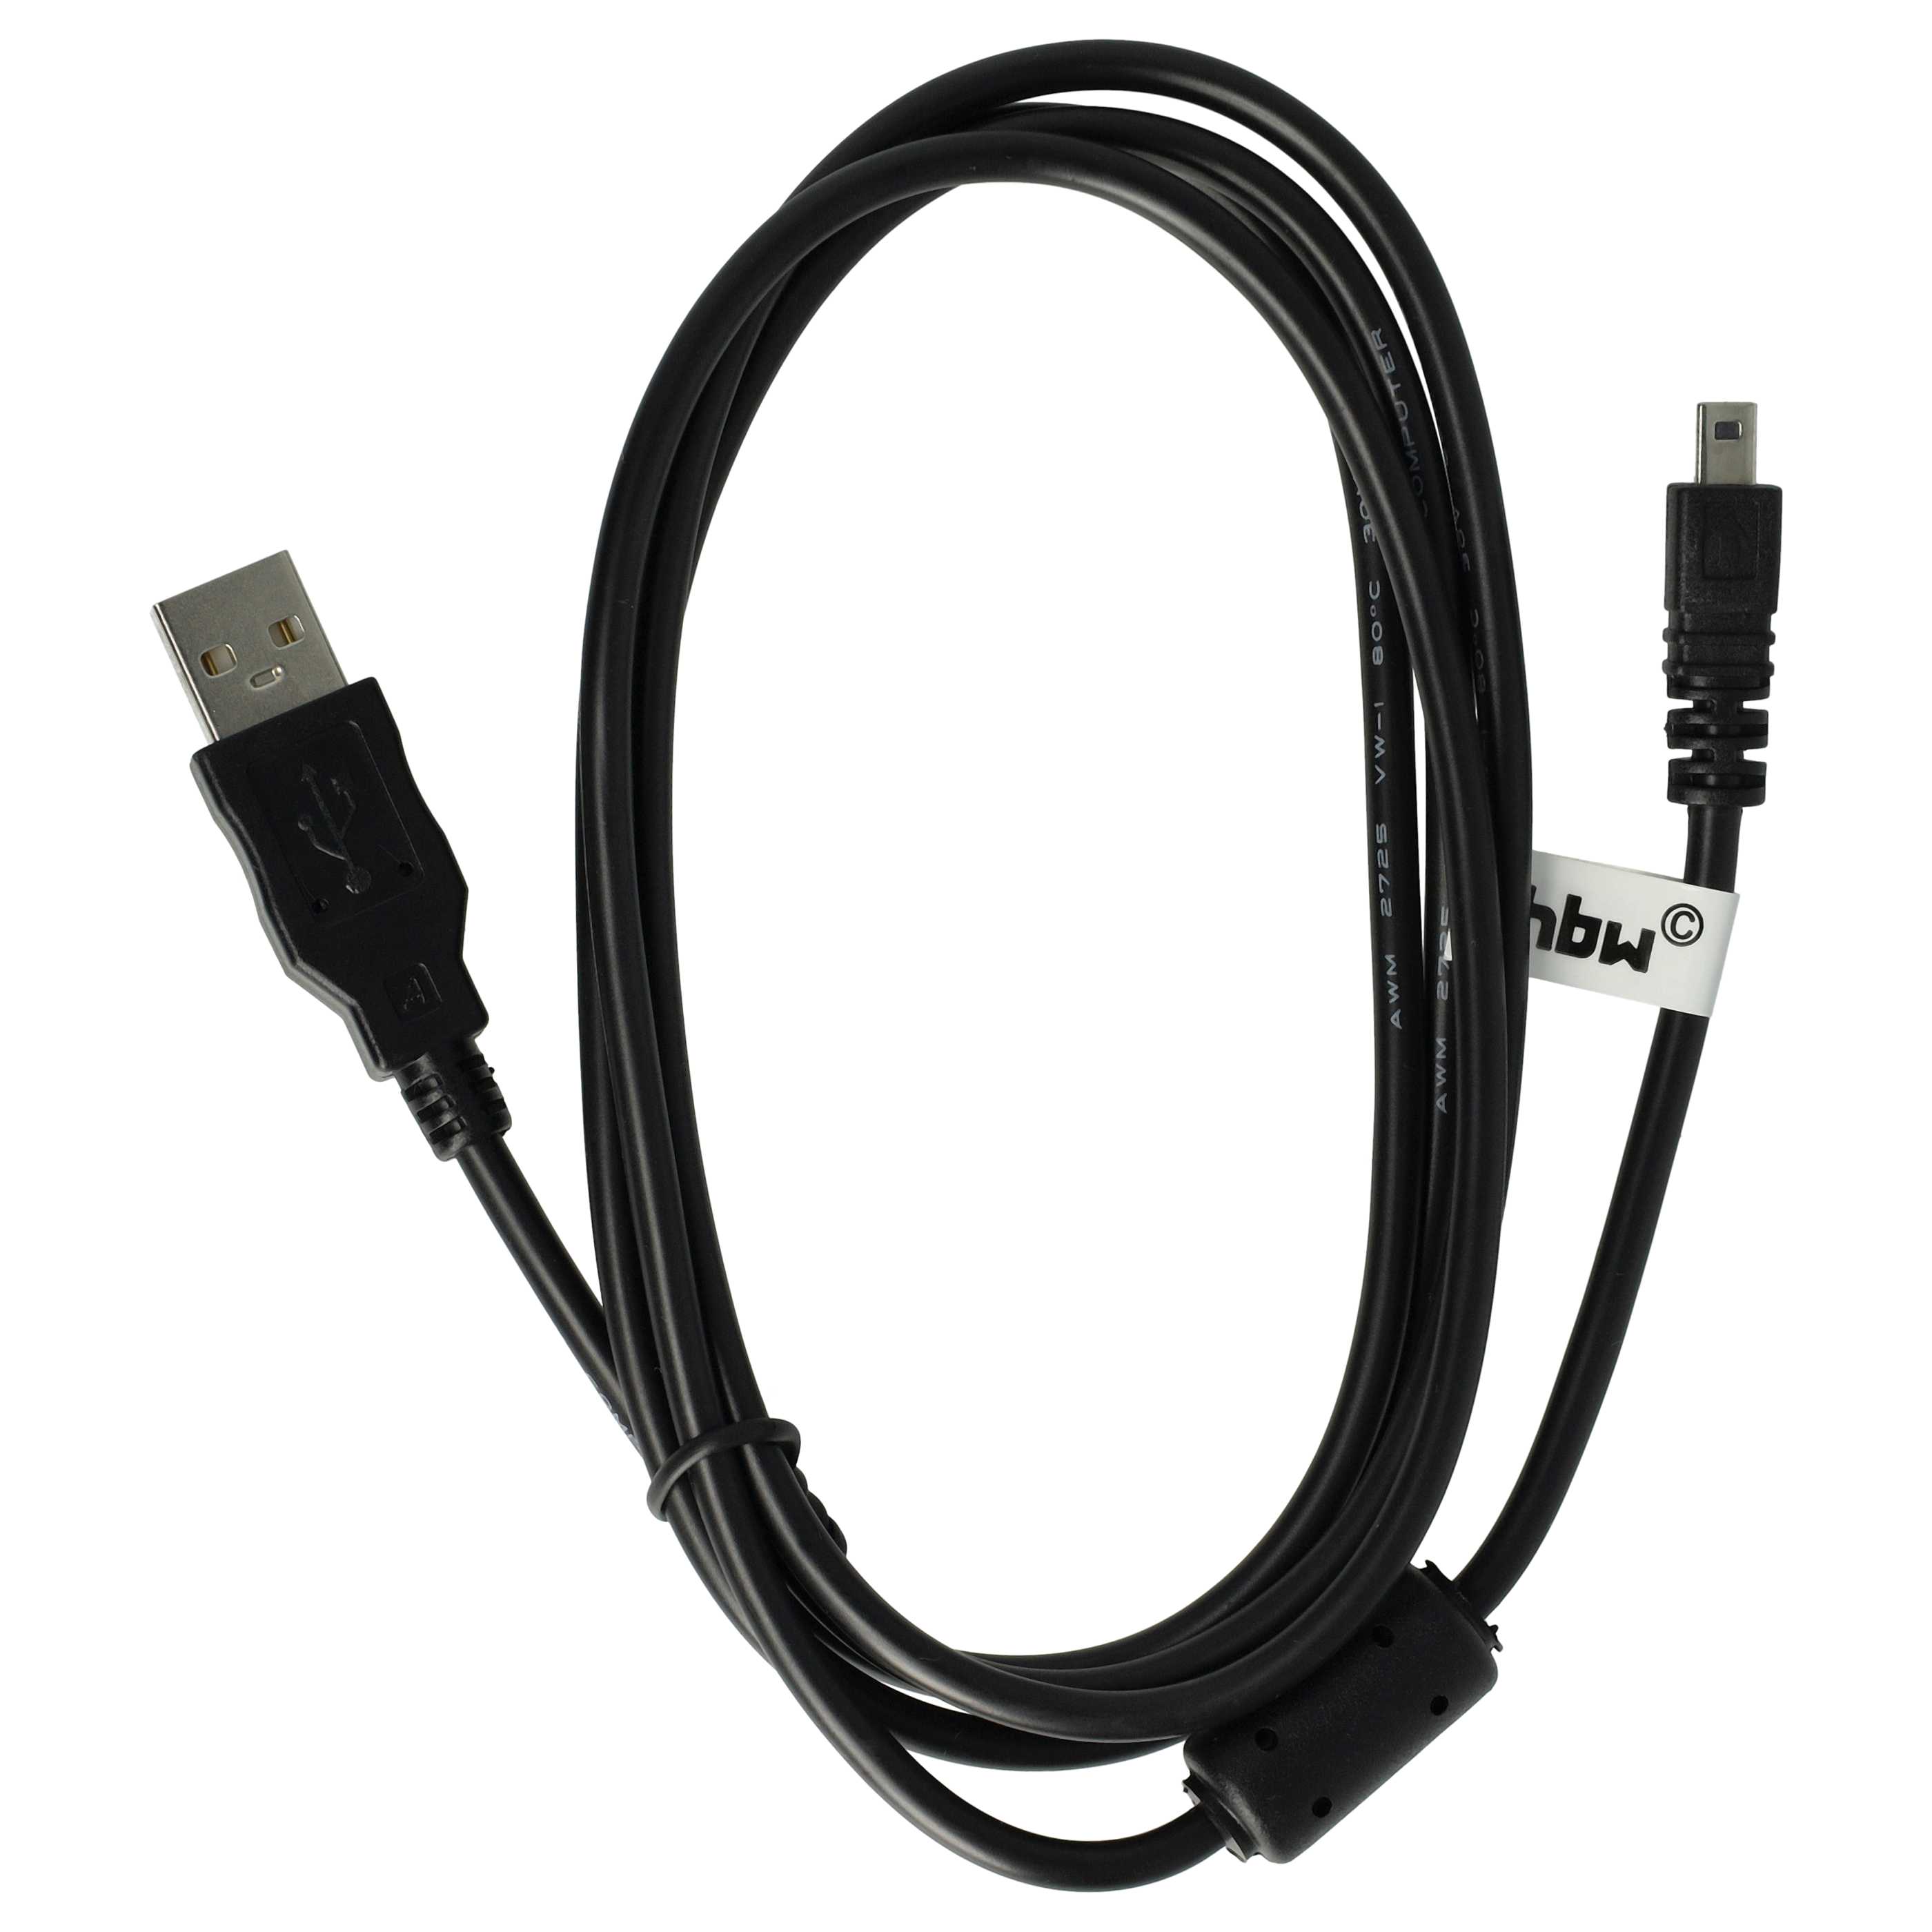 USB Datenkabel als Ersatz für Casio EMC-5U für Kamera u.a. - 150 cm